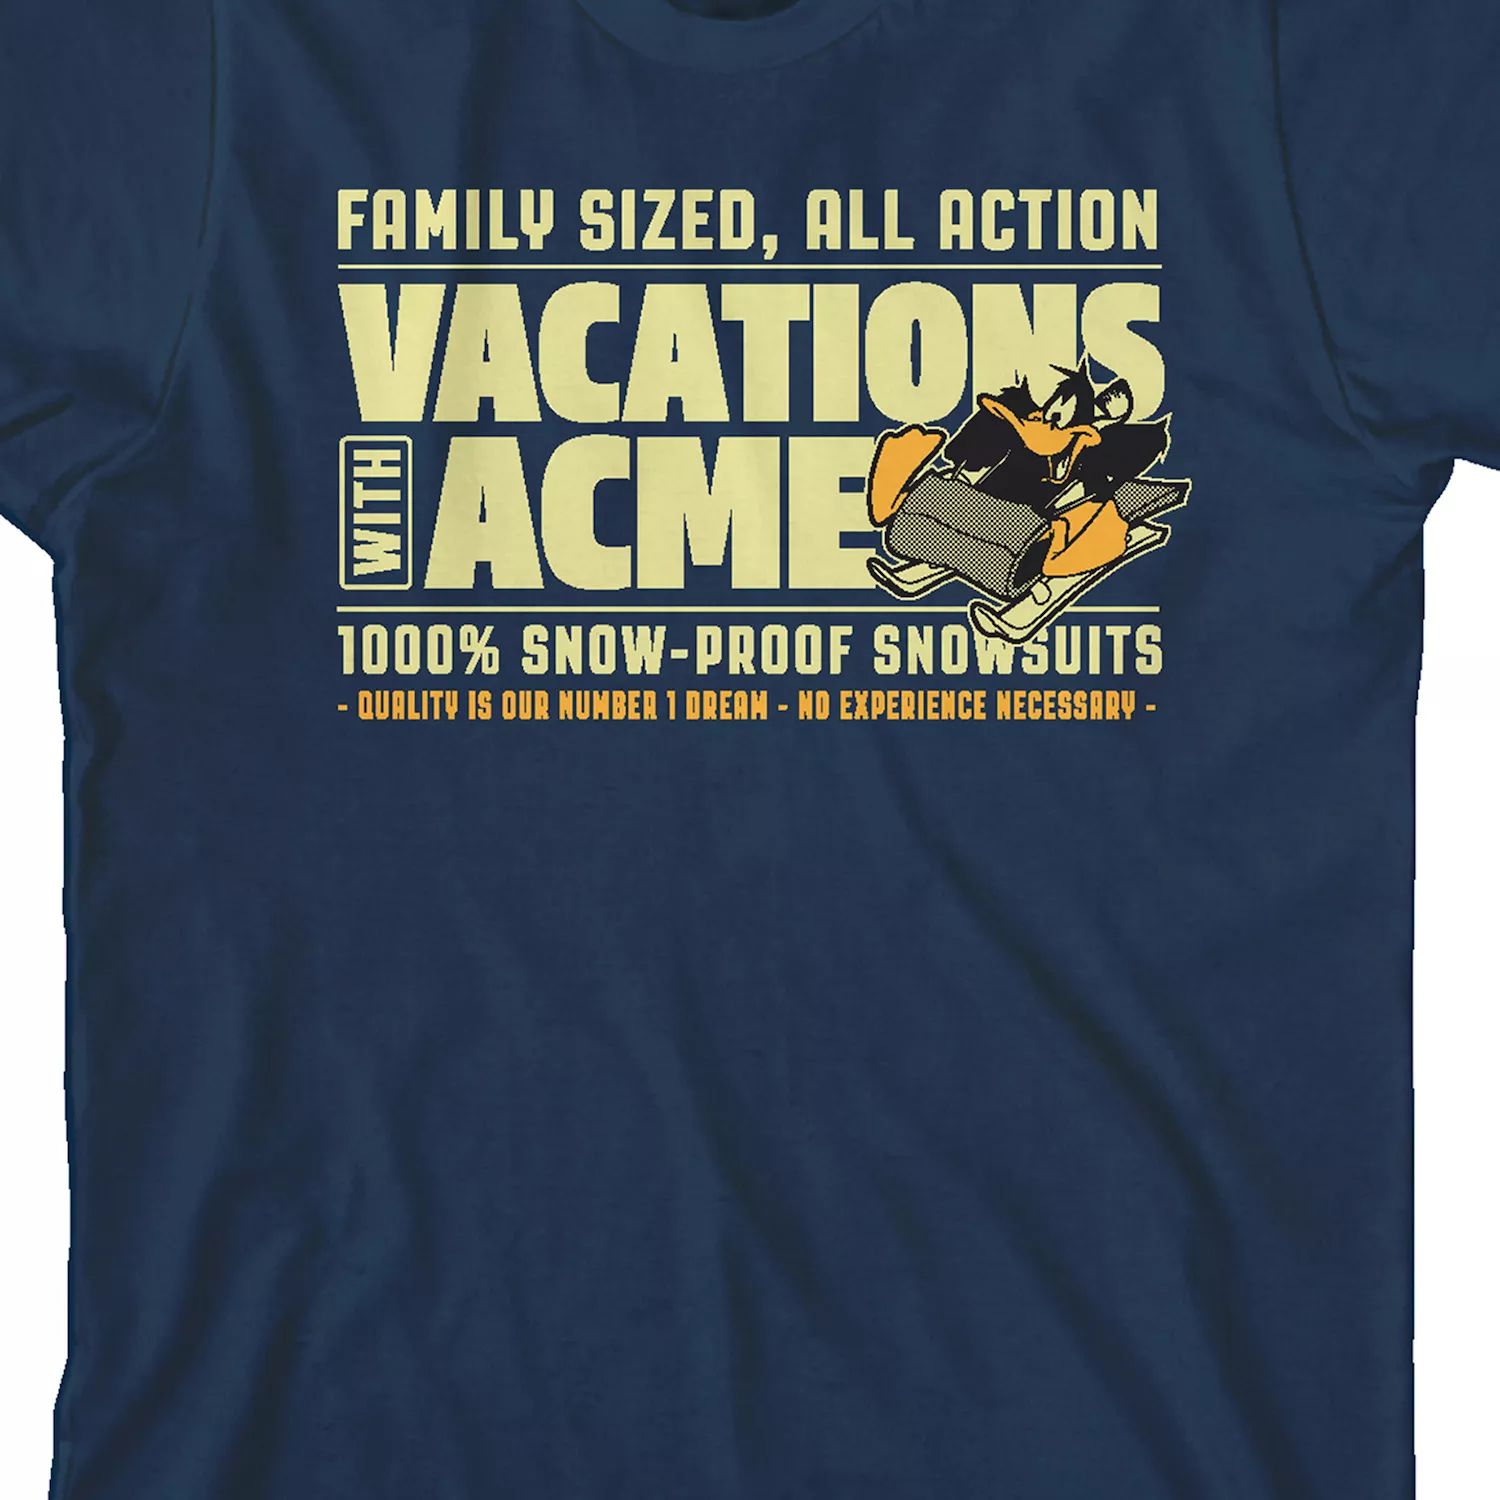 Футболка с рисунком Looney Tunes Vacations для мальчиков 8–20 лет Licensed Character футболка с рисунком looney tunes vacations для мальчиков 8–20 лет licensed character